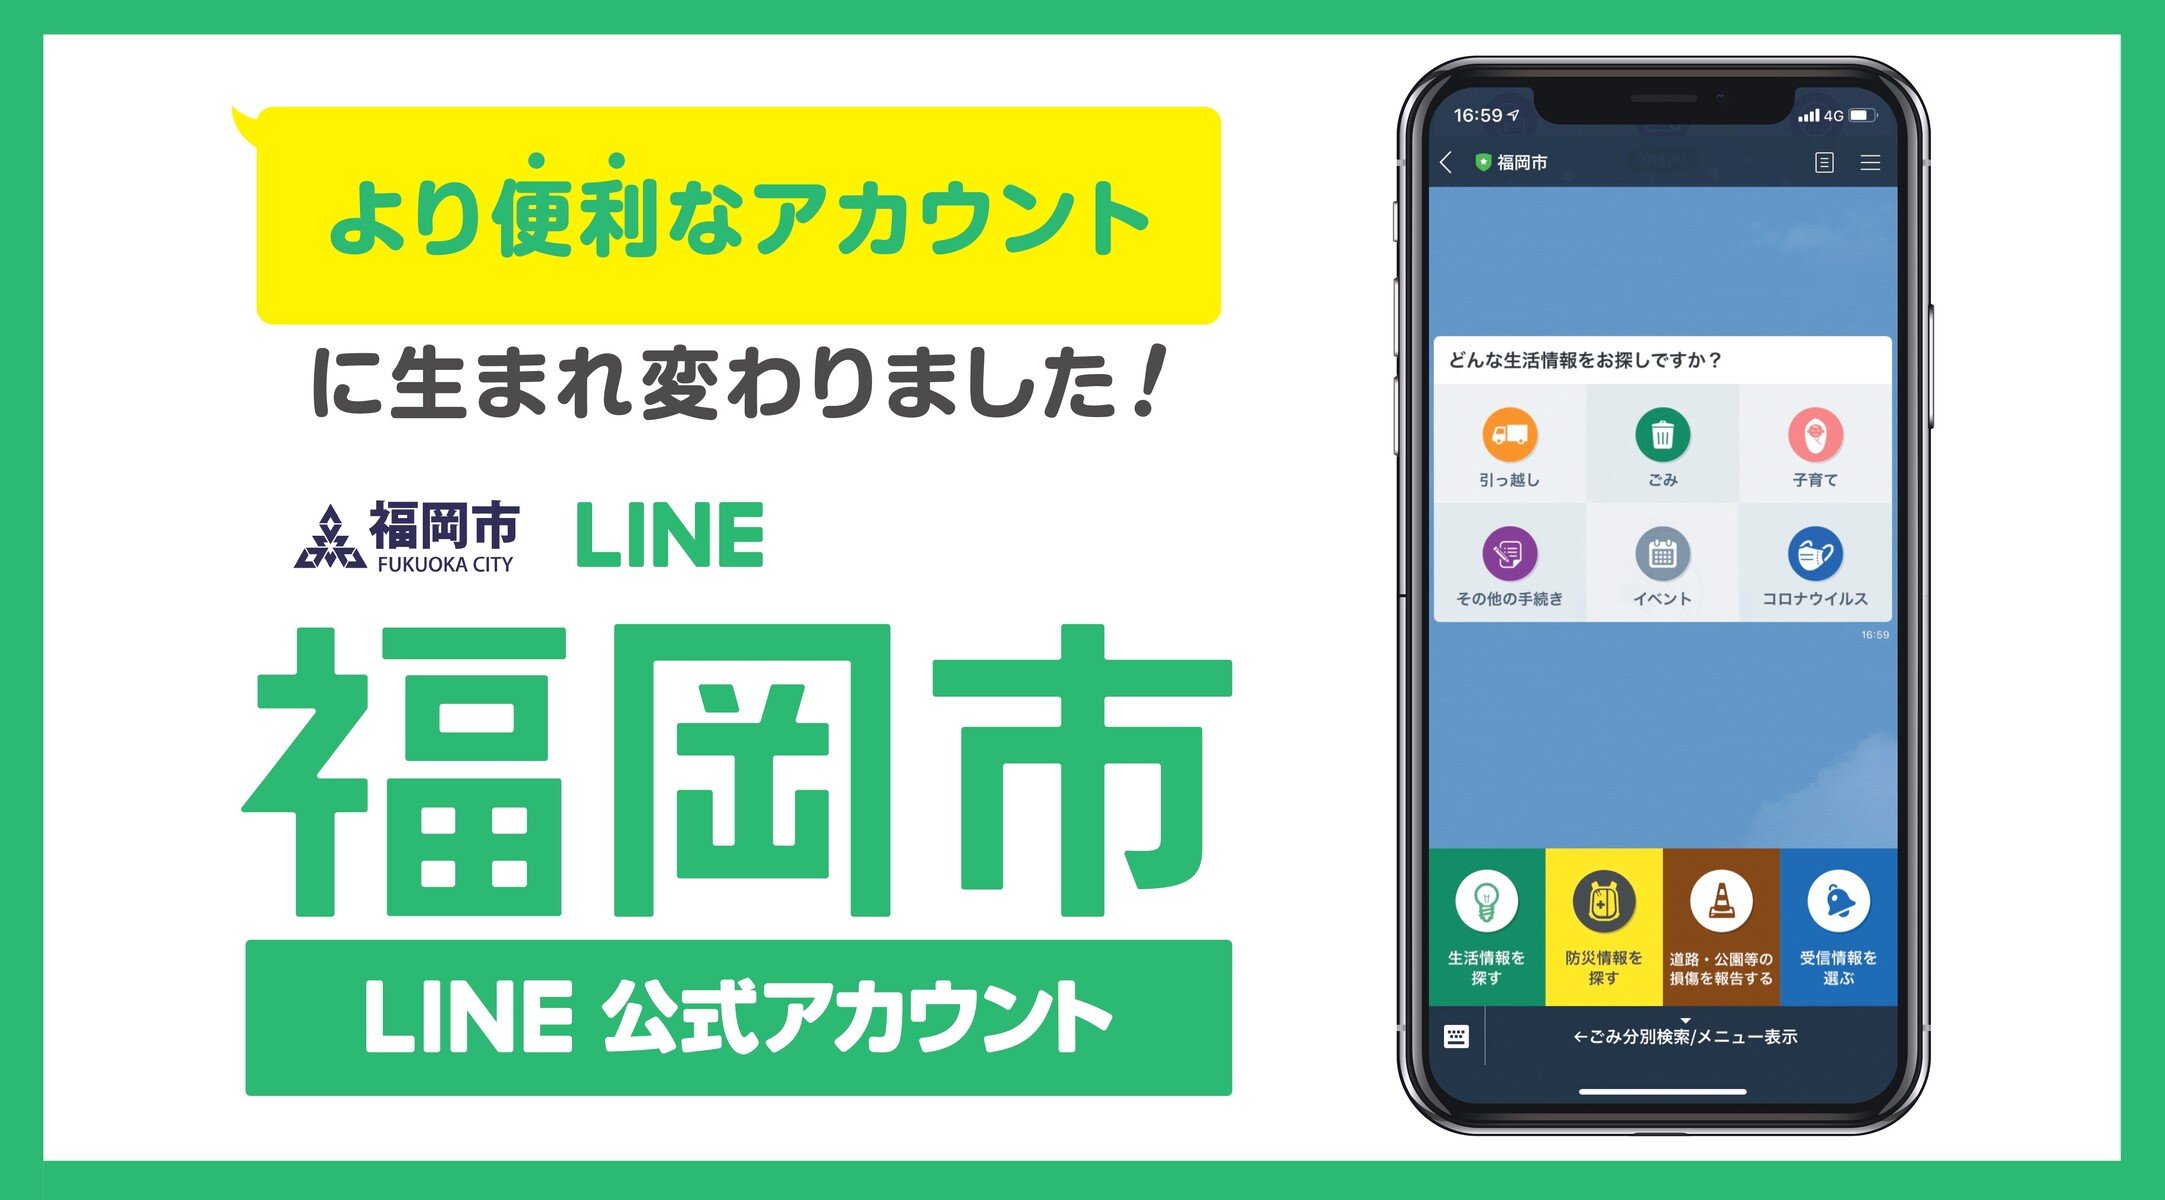 福岡市LINE公式アカウントがより便利なアカウントに生まれ変わりました！ サムネイル画像